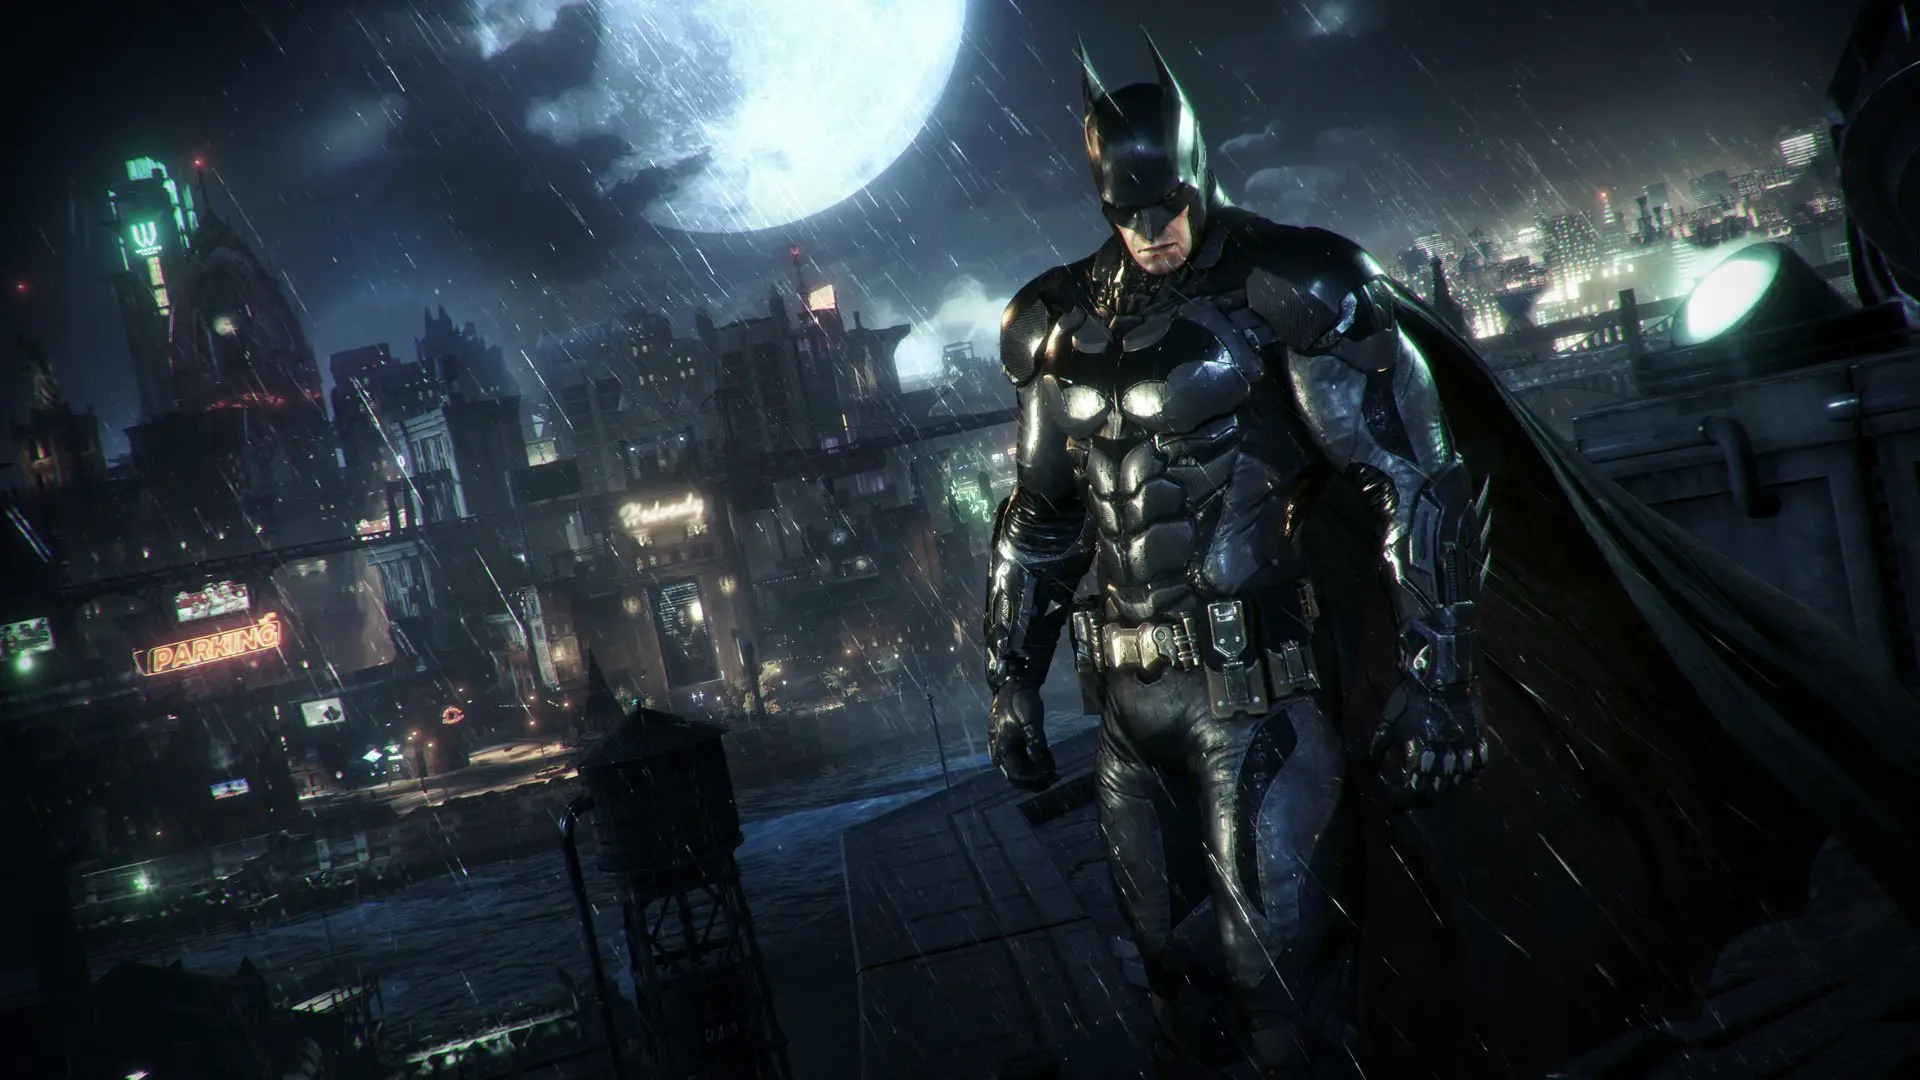 Le costume de The Batman bientôt offert aux joueurs de Batman Arkham Knight sur consoles et PC